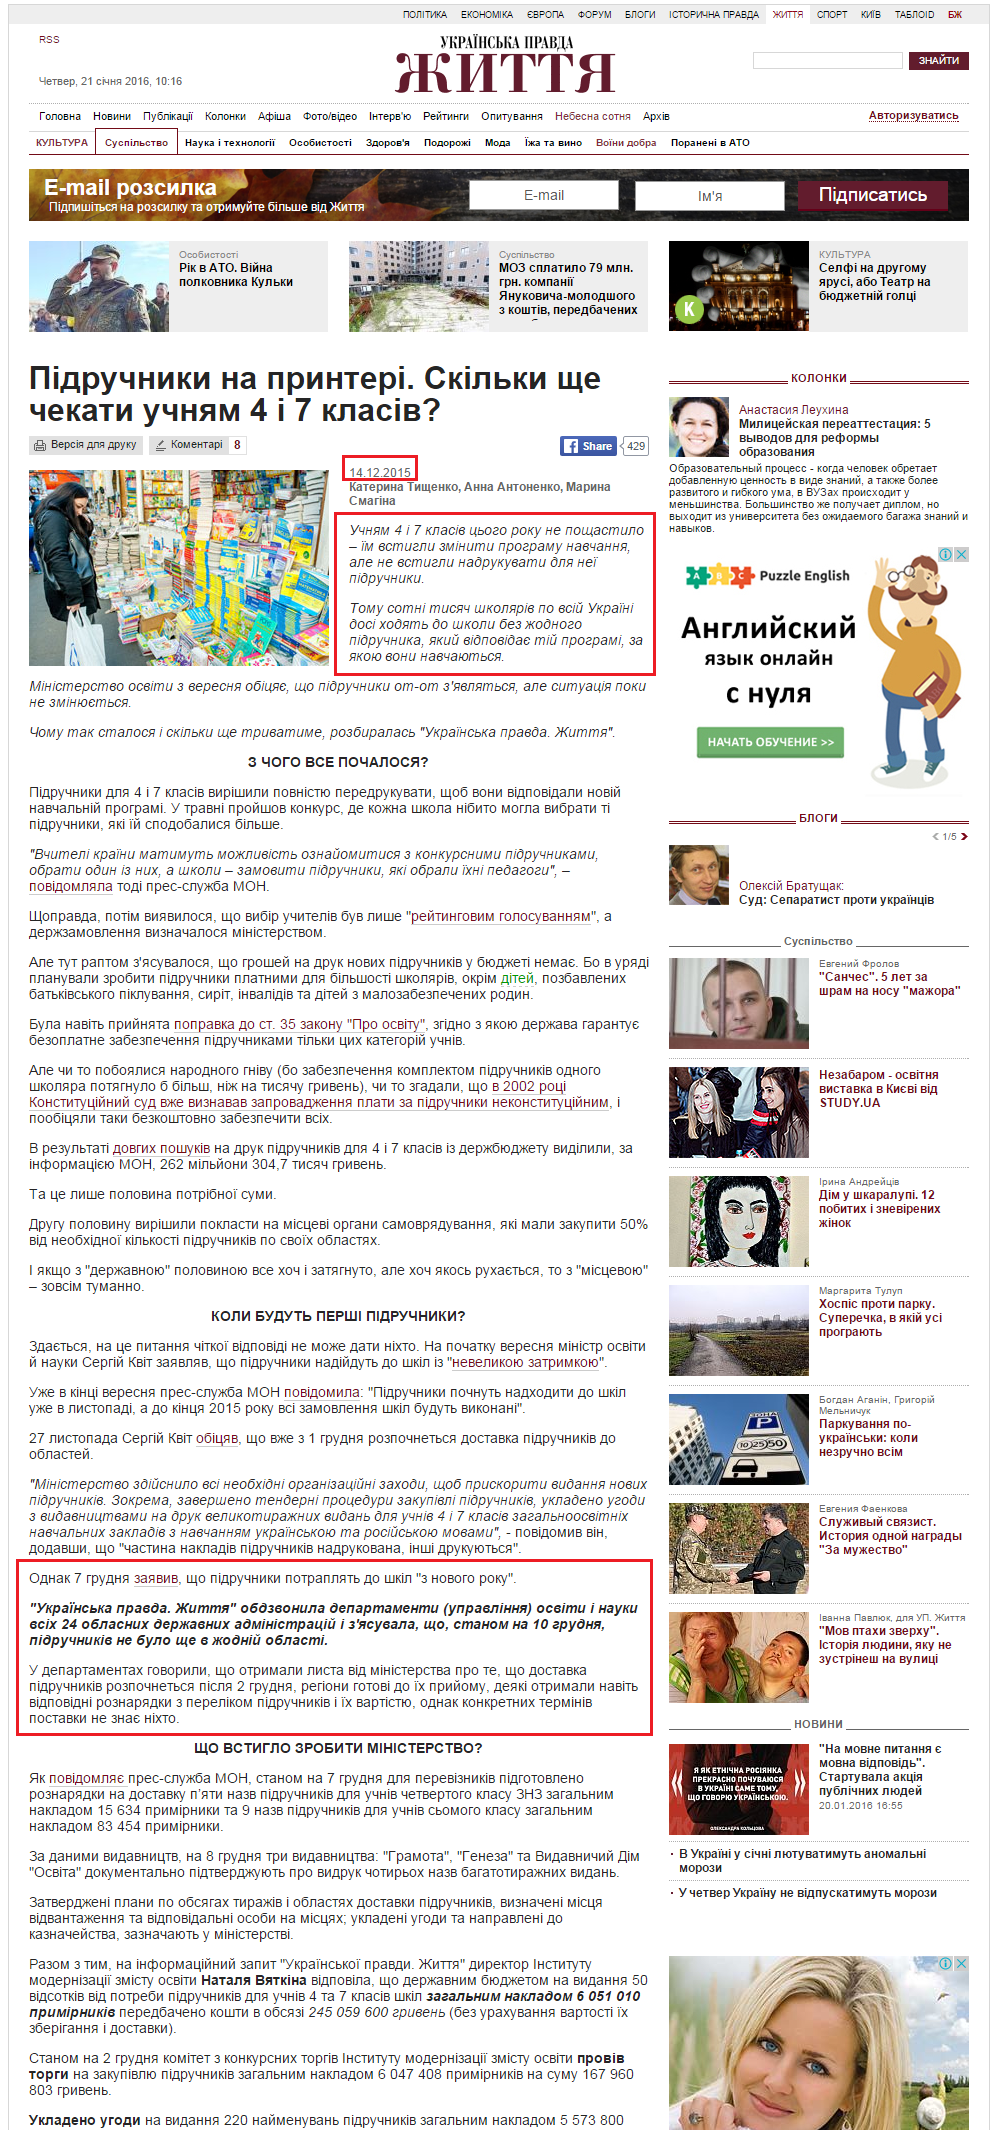 http://life.pravda.com.ua/society/2015/12/14/204657/